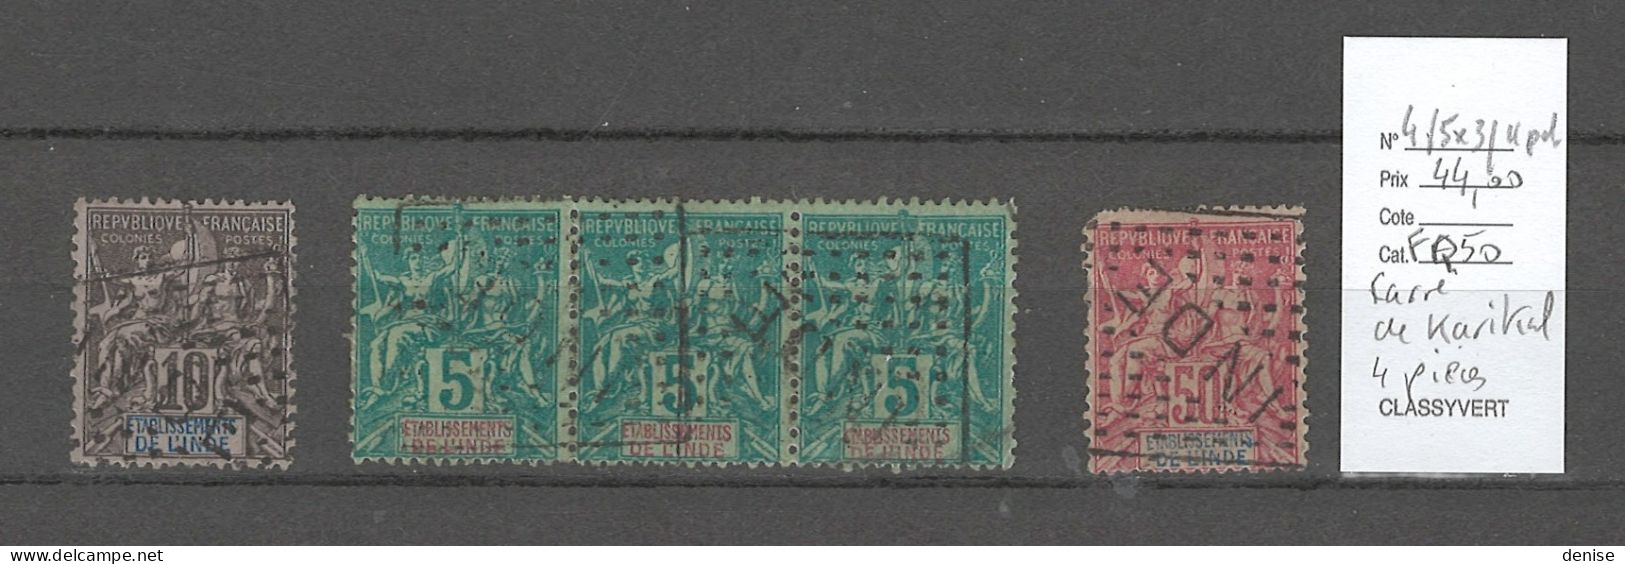 Inde Française - Yvert 4 - 5  En Bande De 3 Et 11 - Cachet Dit Carré De Karikal - Rare - Used Stamps